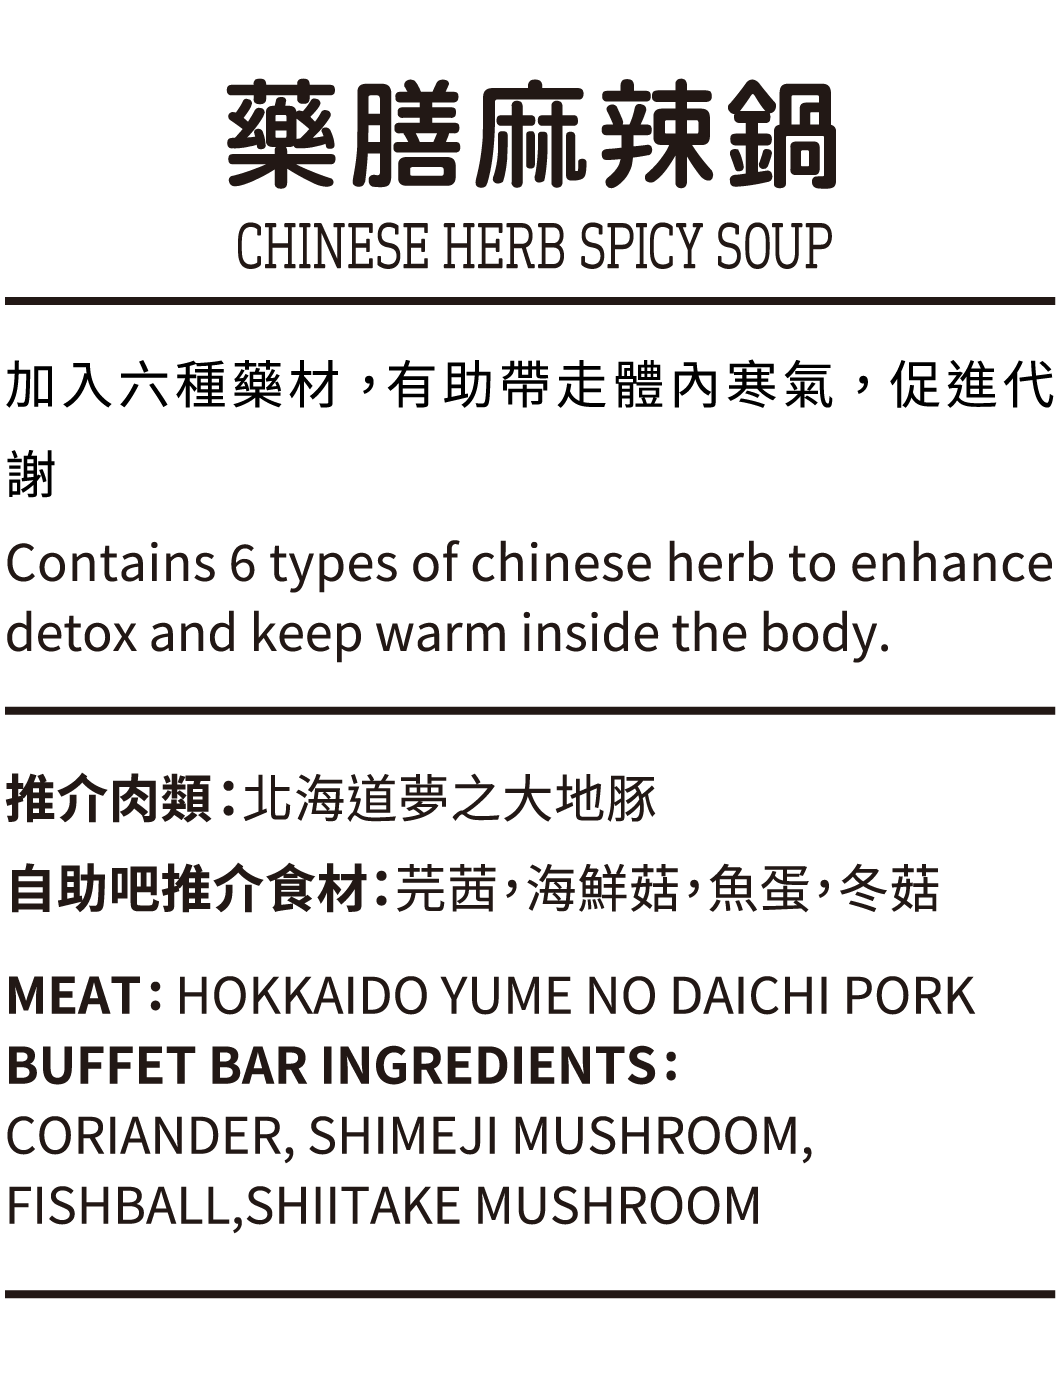 藥膳麻辣鍋, 加入六種藥材， 有助帶走體內寒氣， 促進代謝, 推介肉類：北海道夢之大地豚, 自助吧推介食材：芫茜，海鮮菇，魚蛋，冬菇